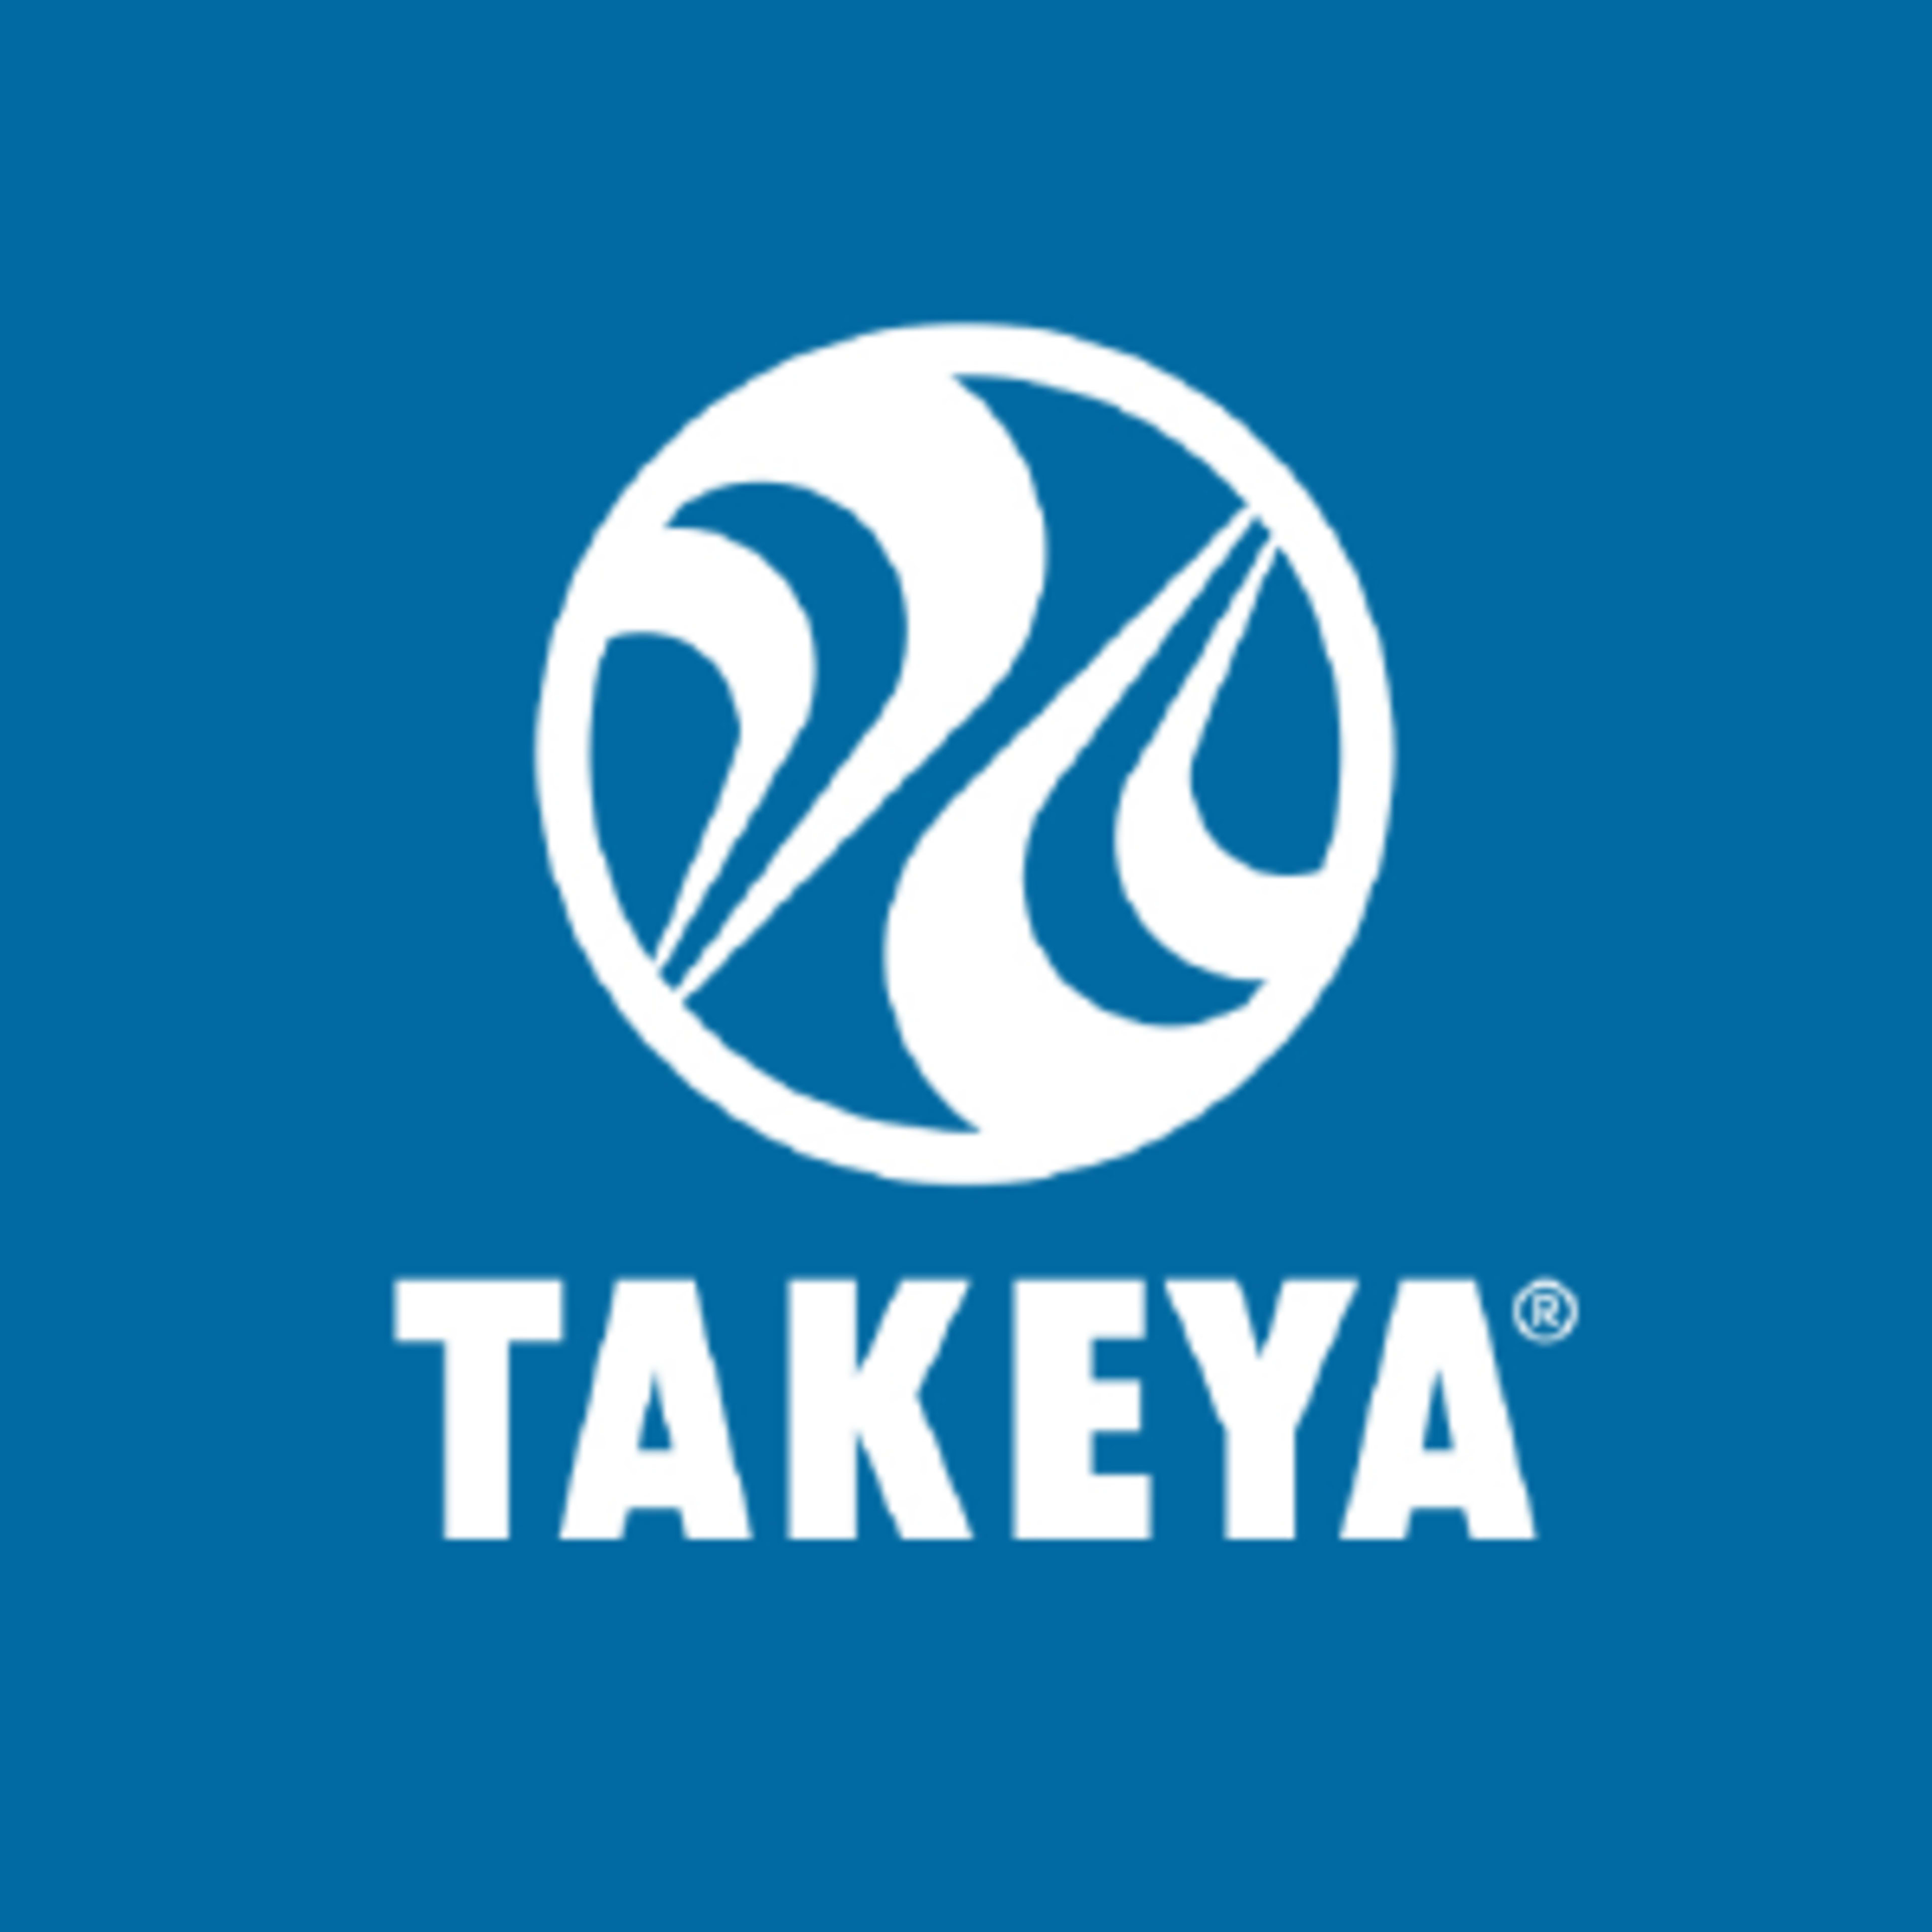 Takeya Code